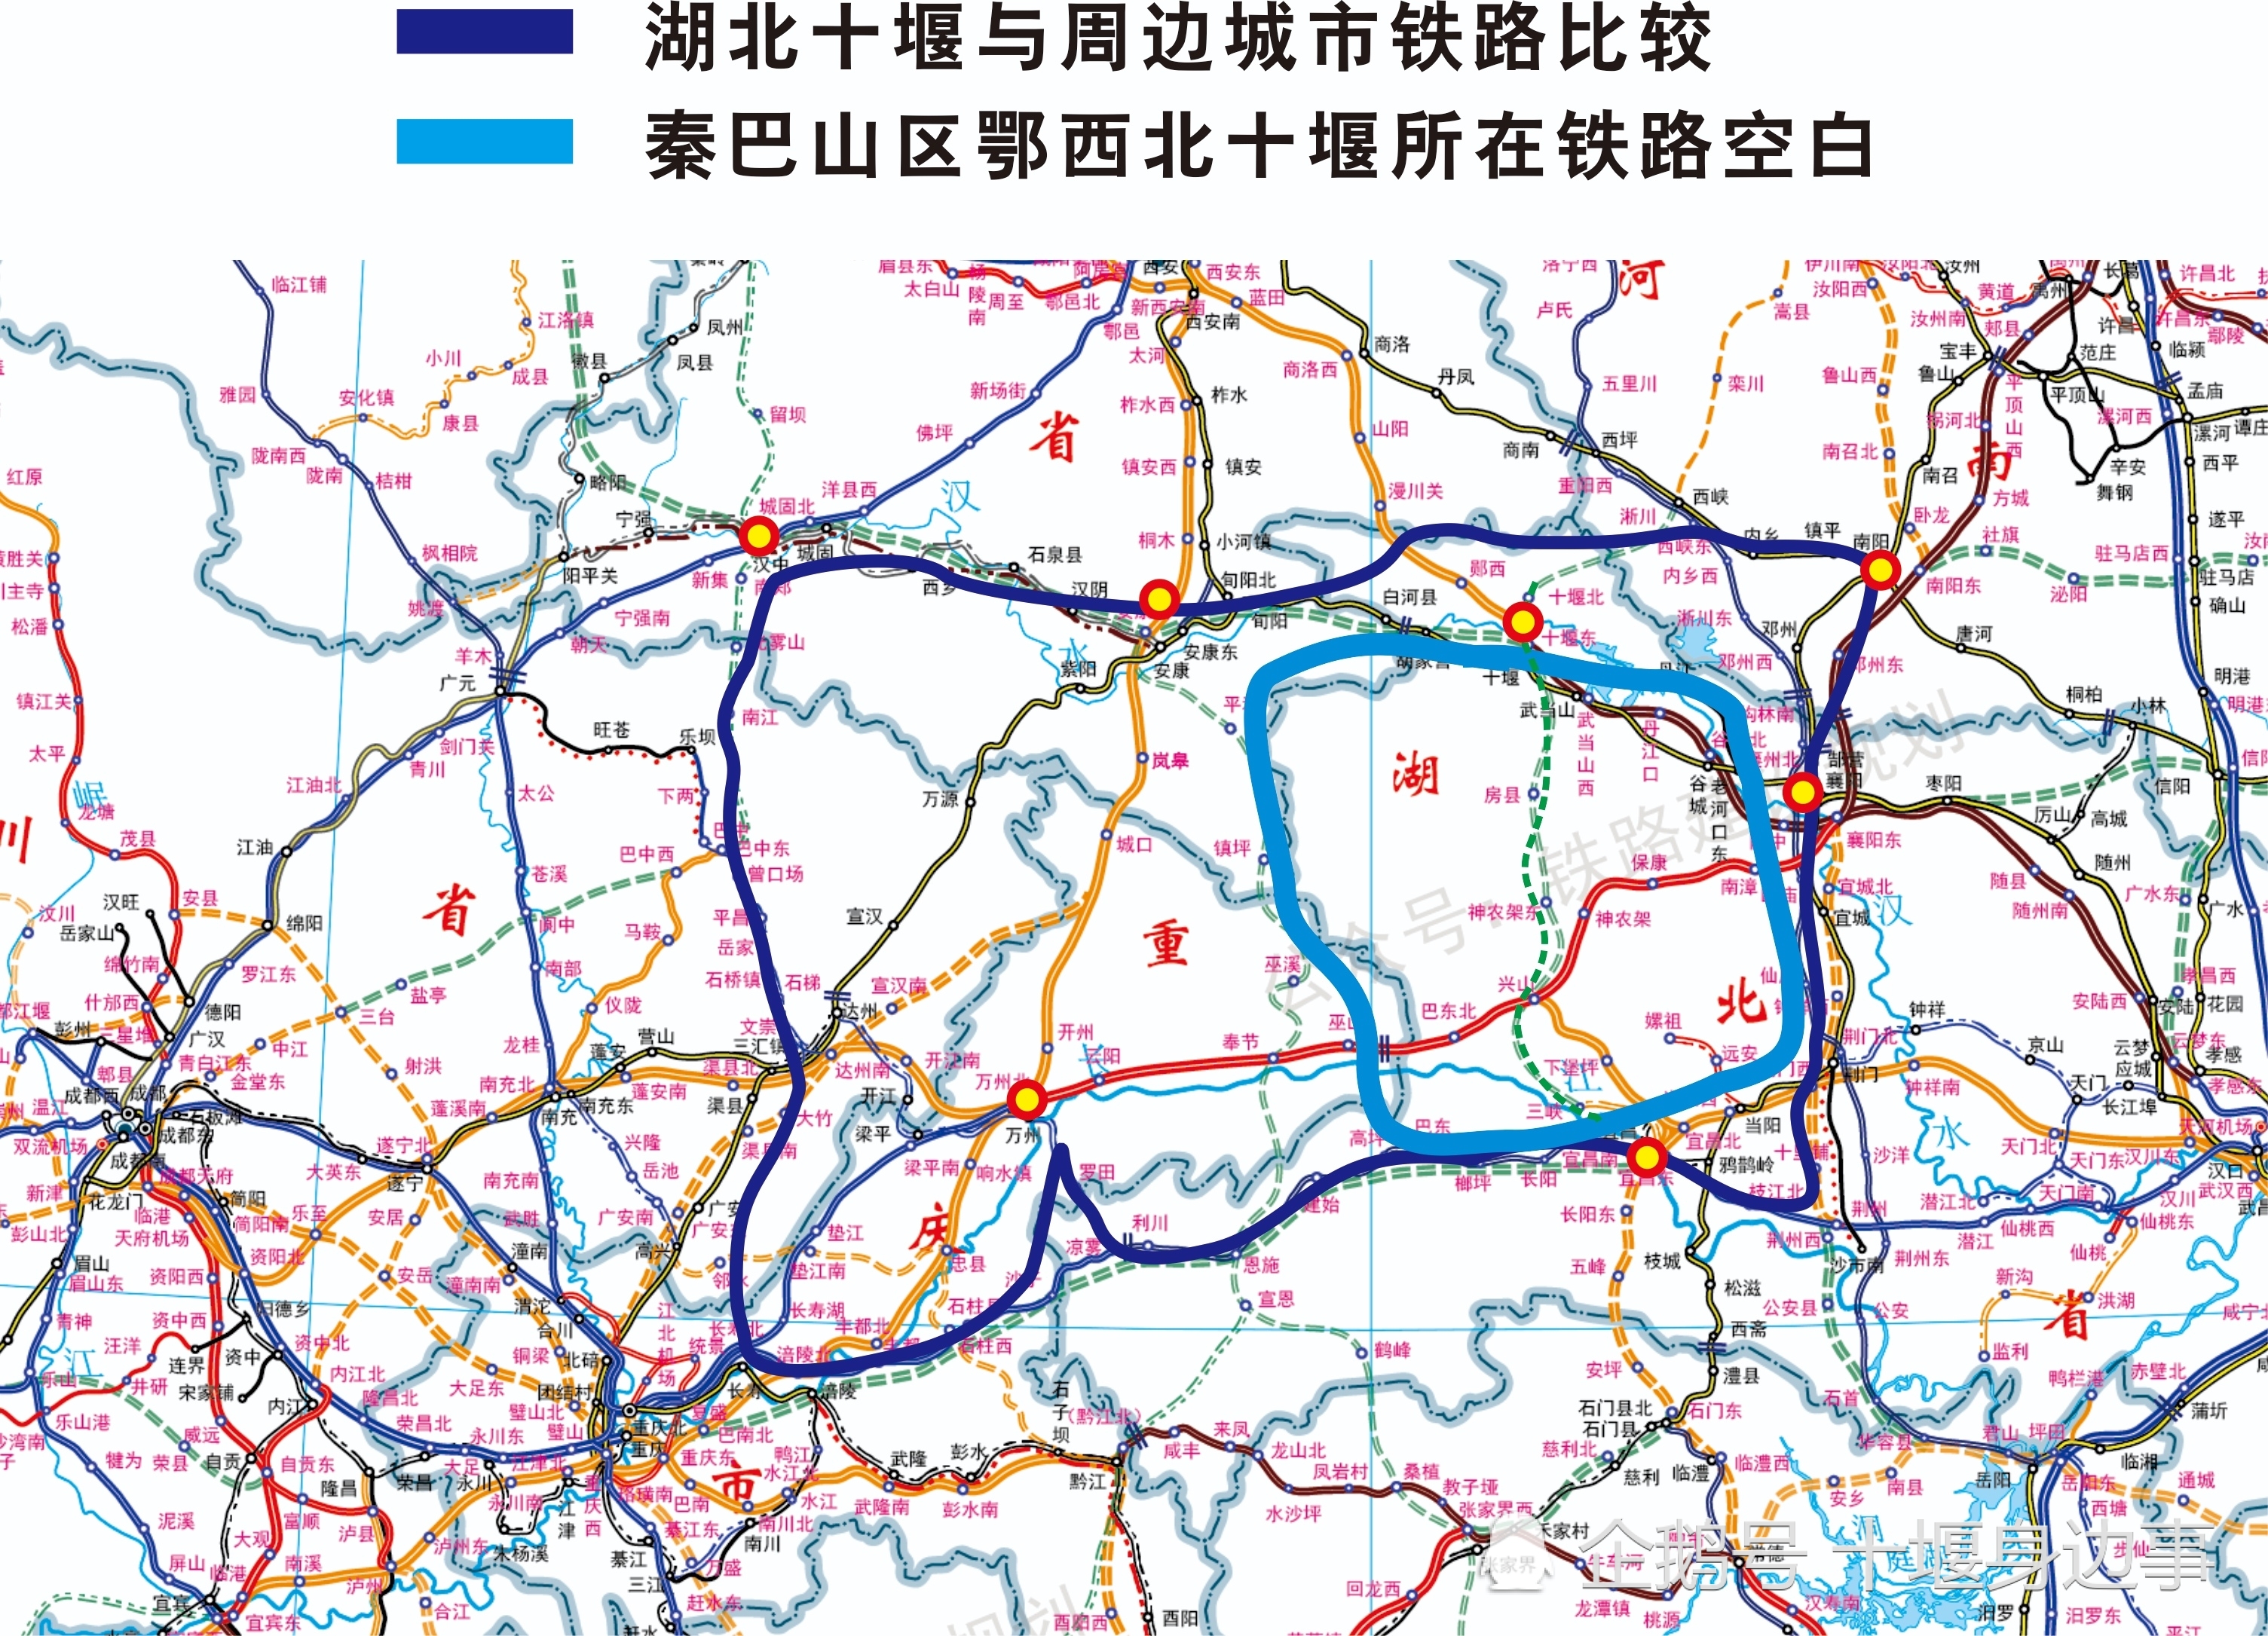 再谈新建十堰至宜昌铁路的重要意义